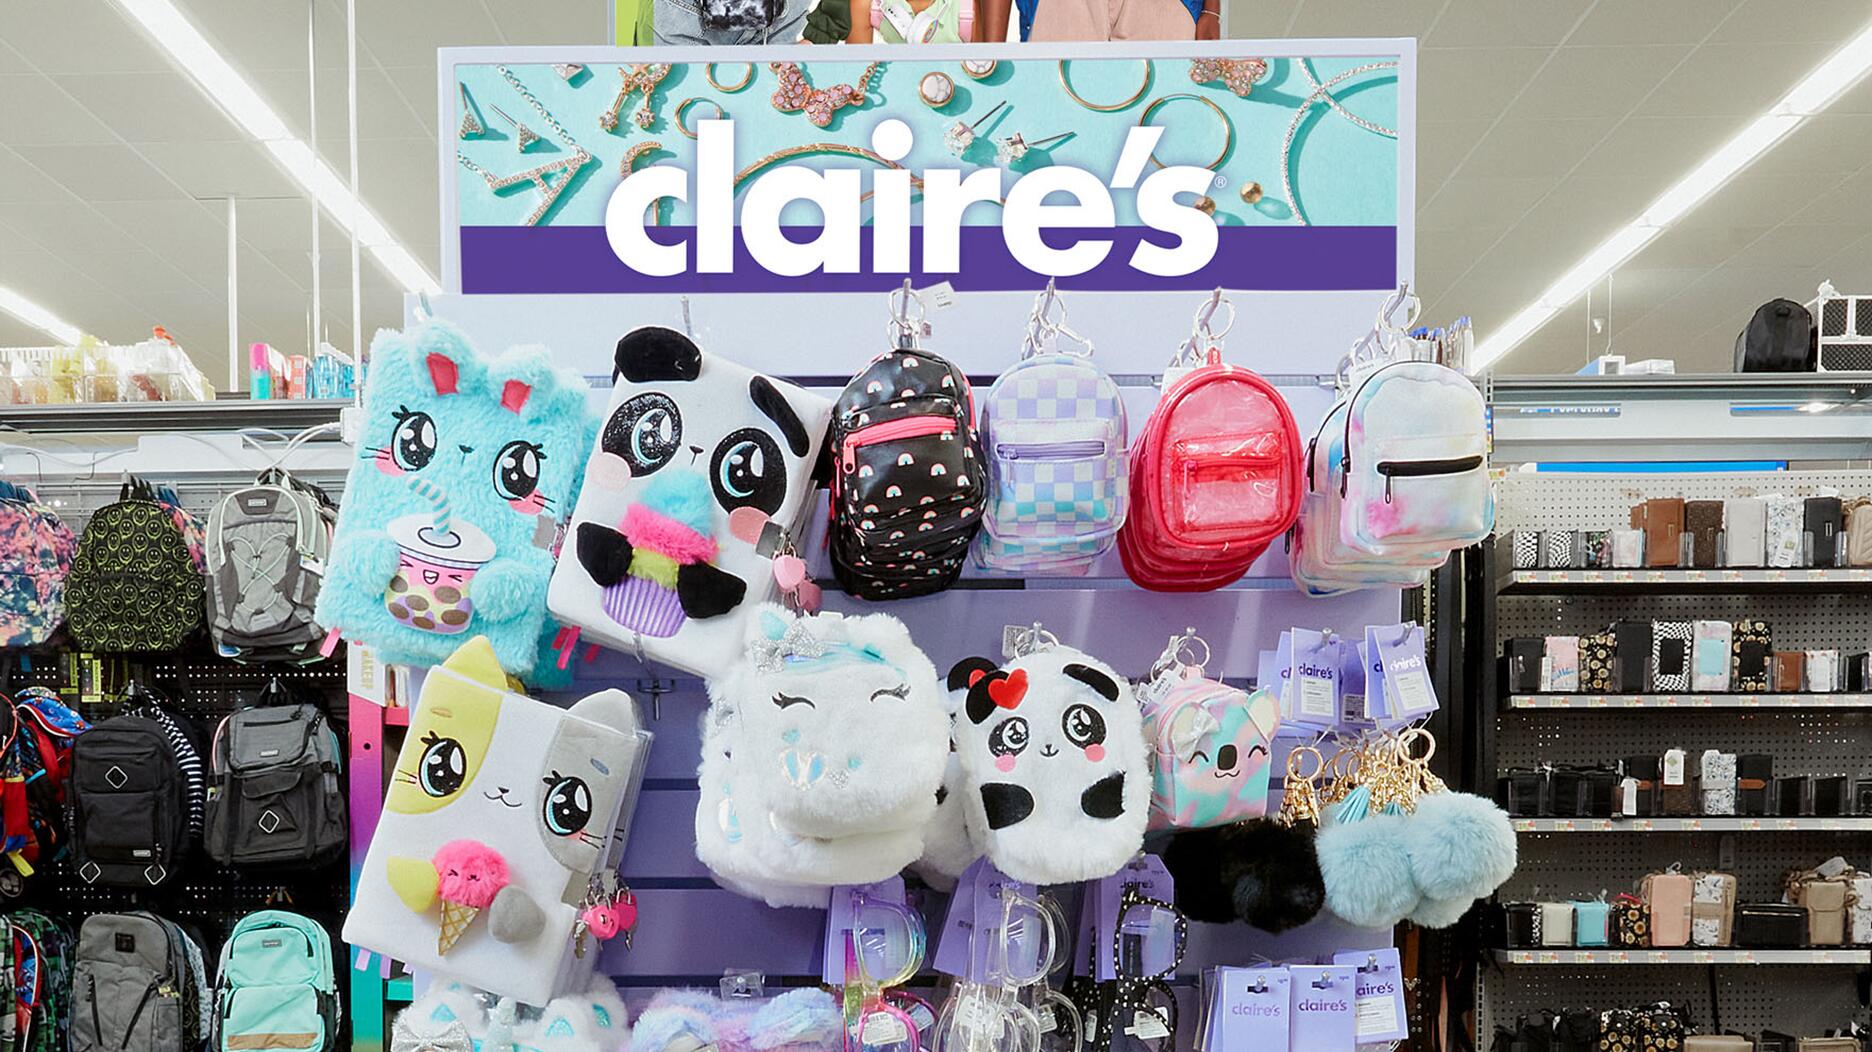 Claire's Boutique